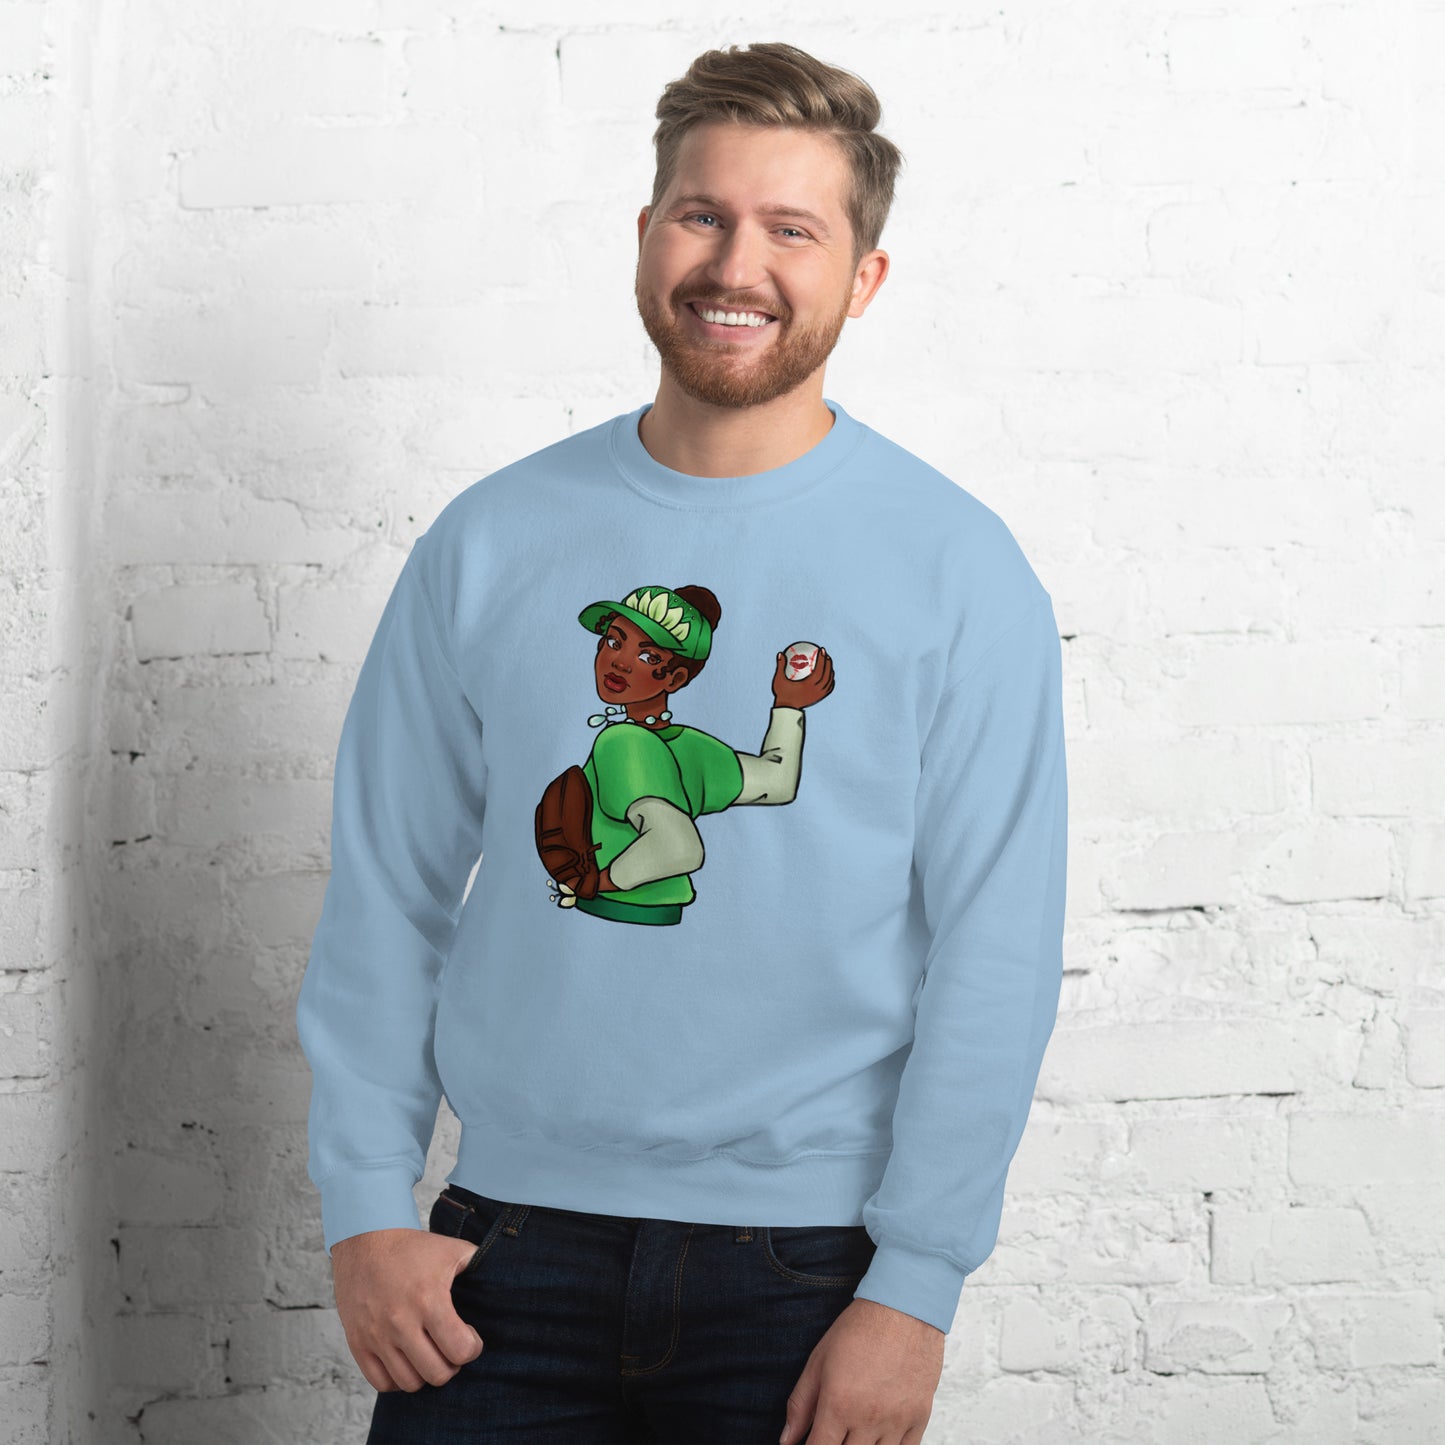 Tiana Inspired - Unisex Adult Sweatshirt